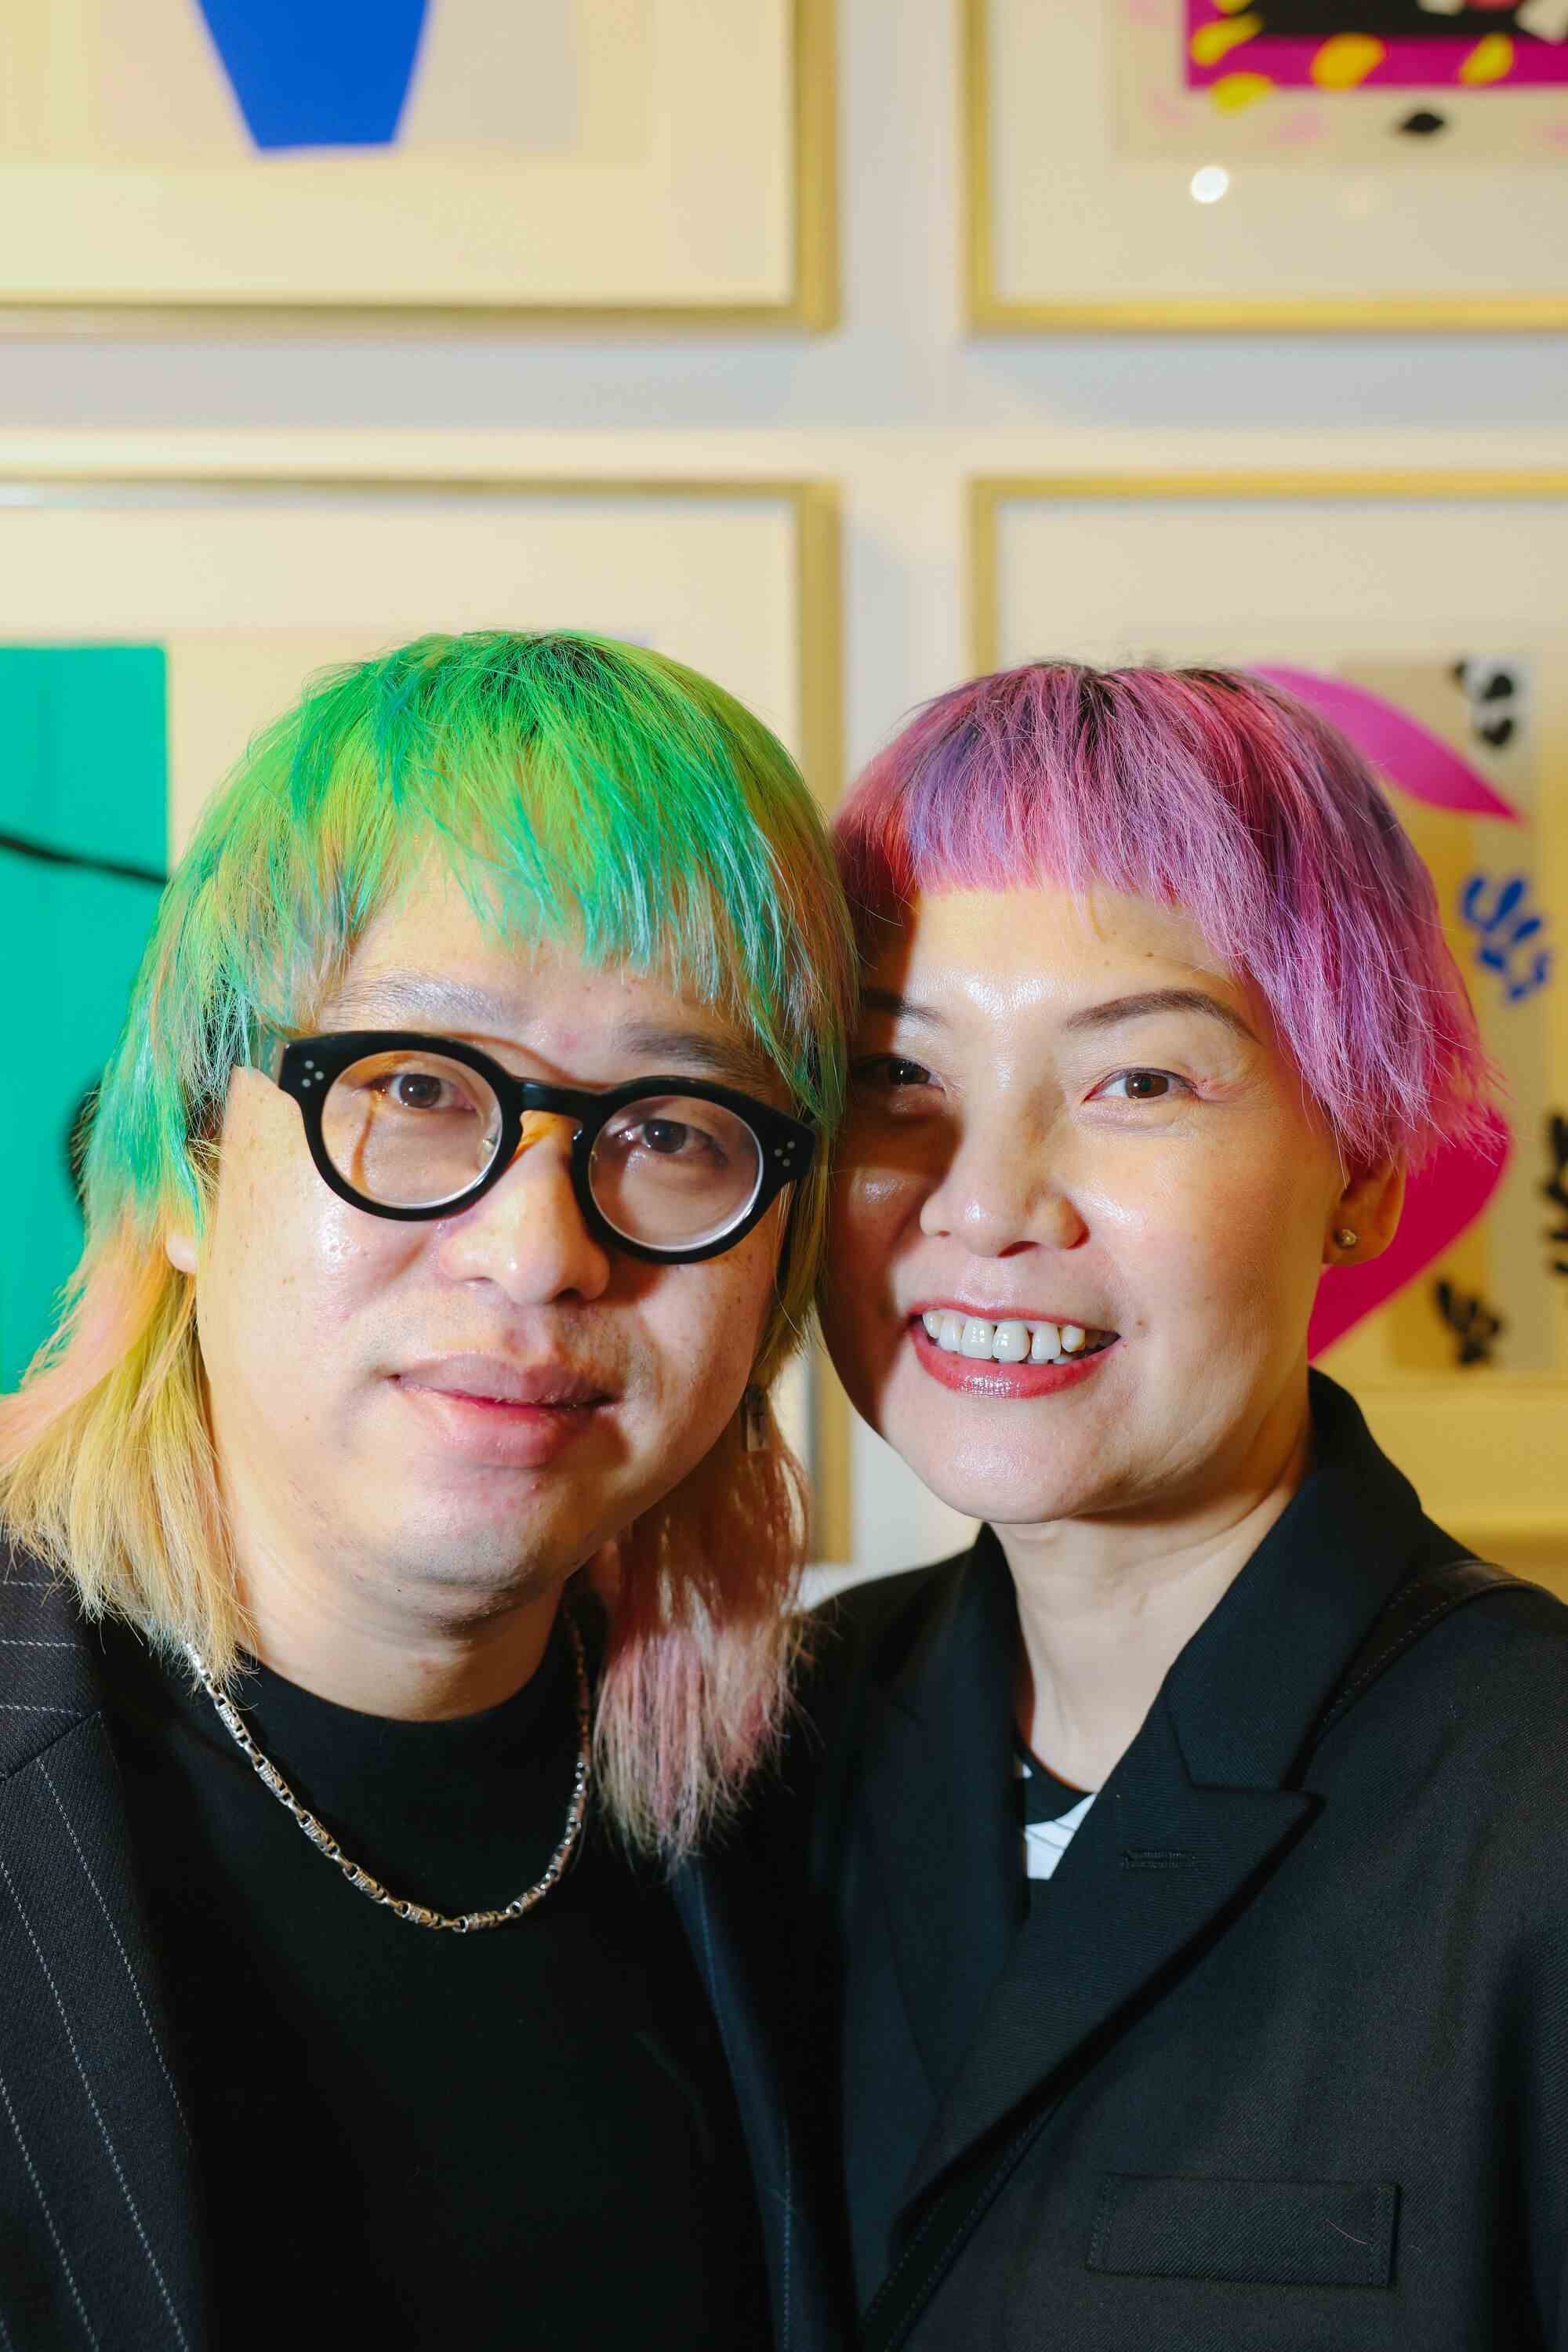 Zwei Personen mit gefärbten Haaren (grün, links und rosa) posieren für ein Foto.